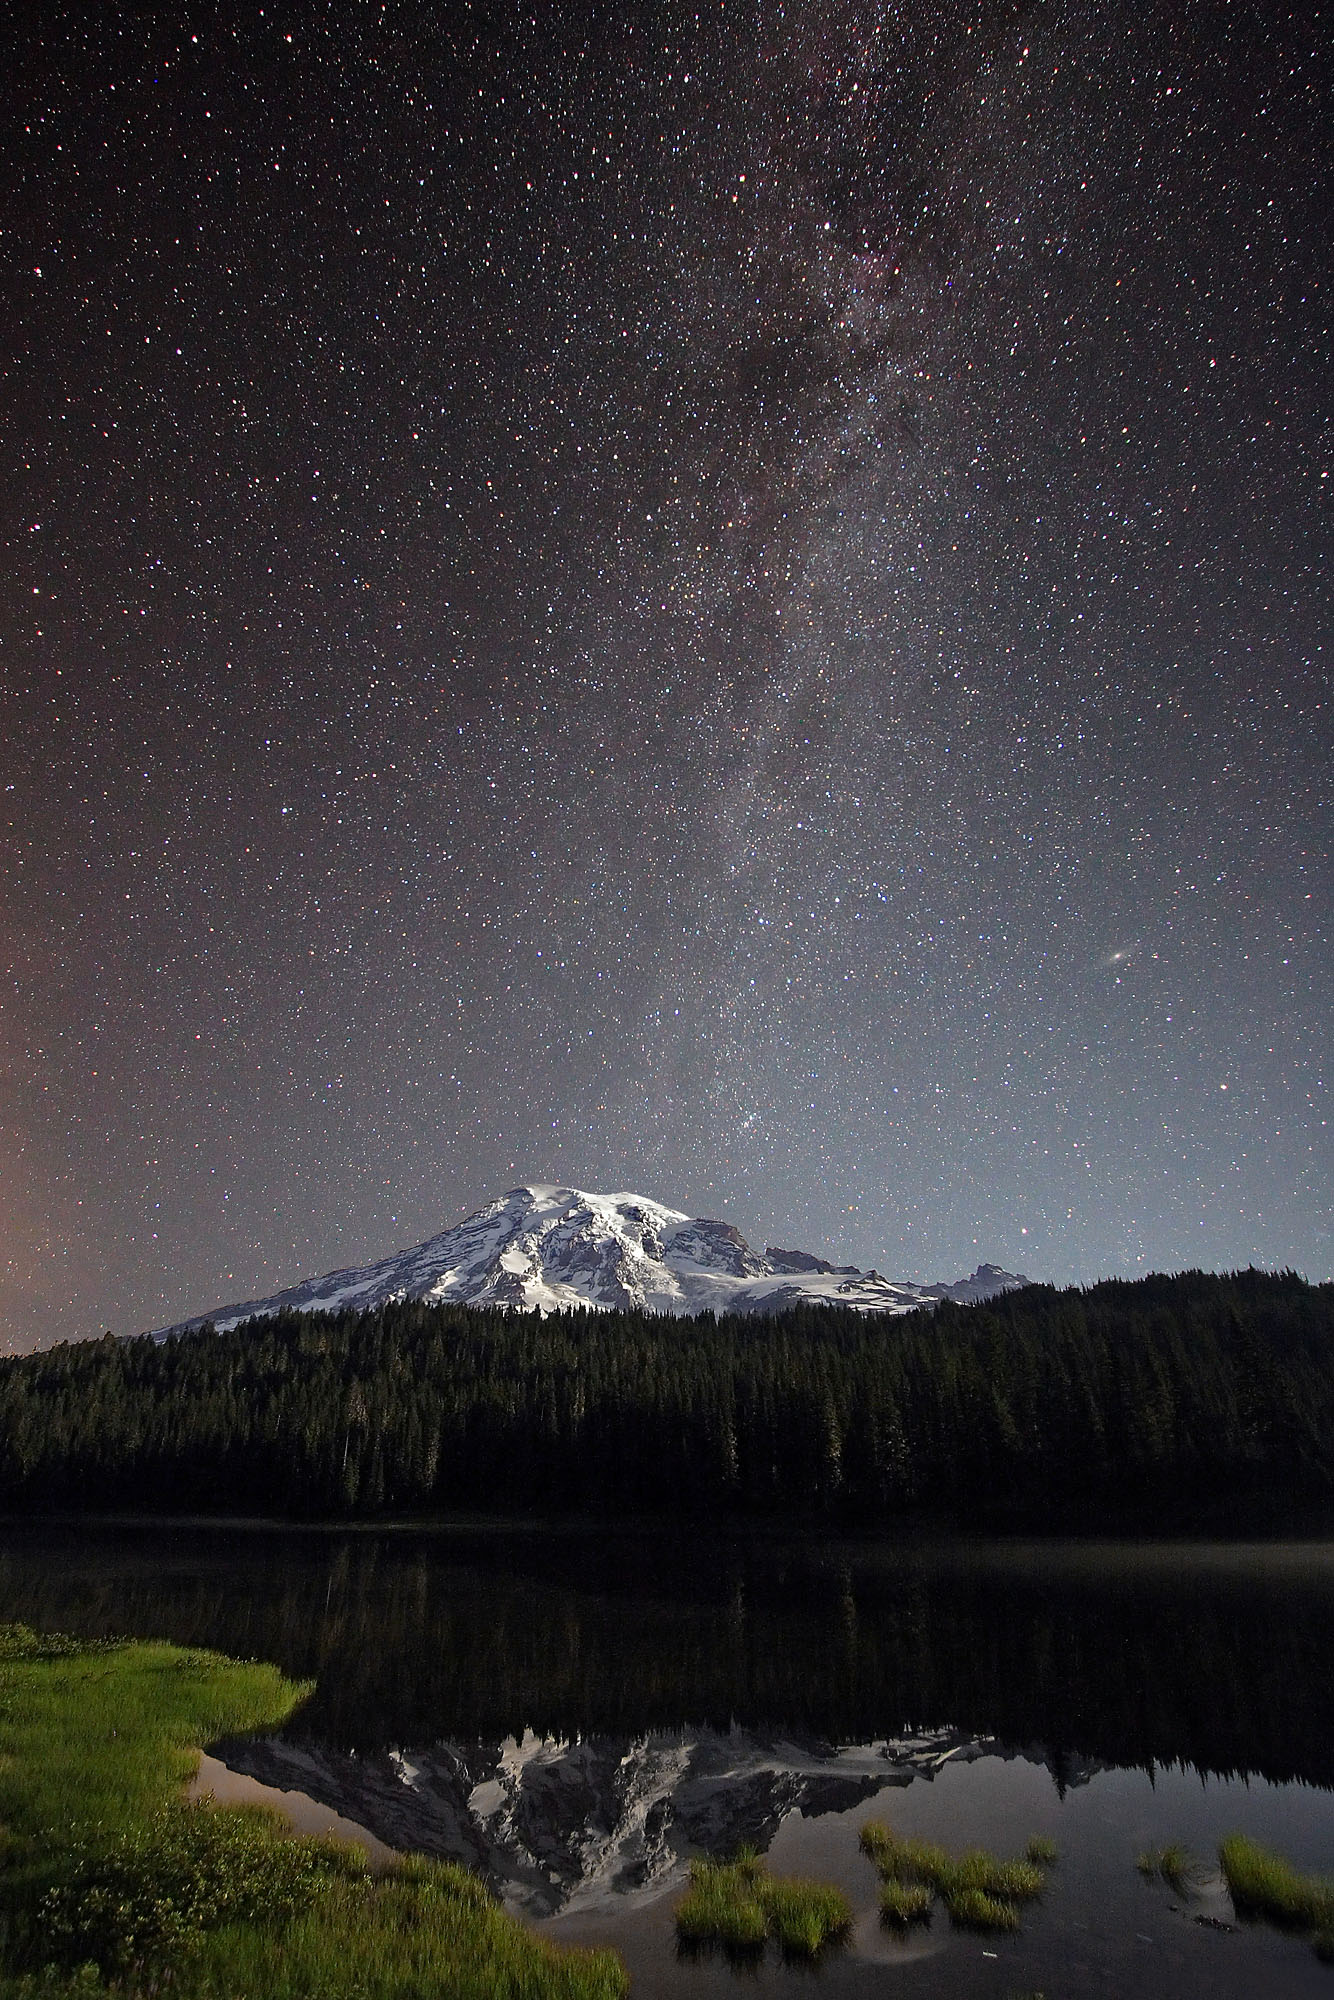 Der nächtliche Vulkan Mount Rainier spiegelt sich mit den Sternen der Milchstrasse in den Reflection Lakes.